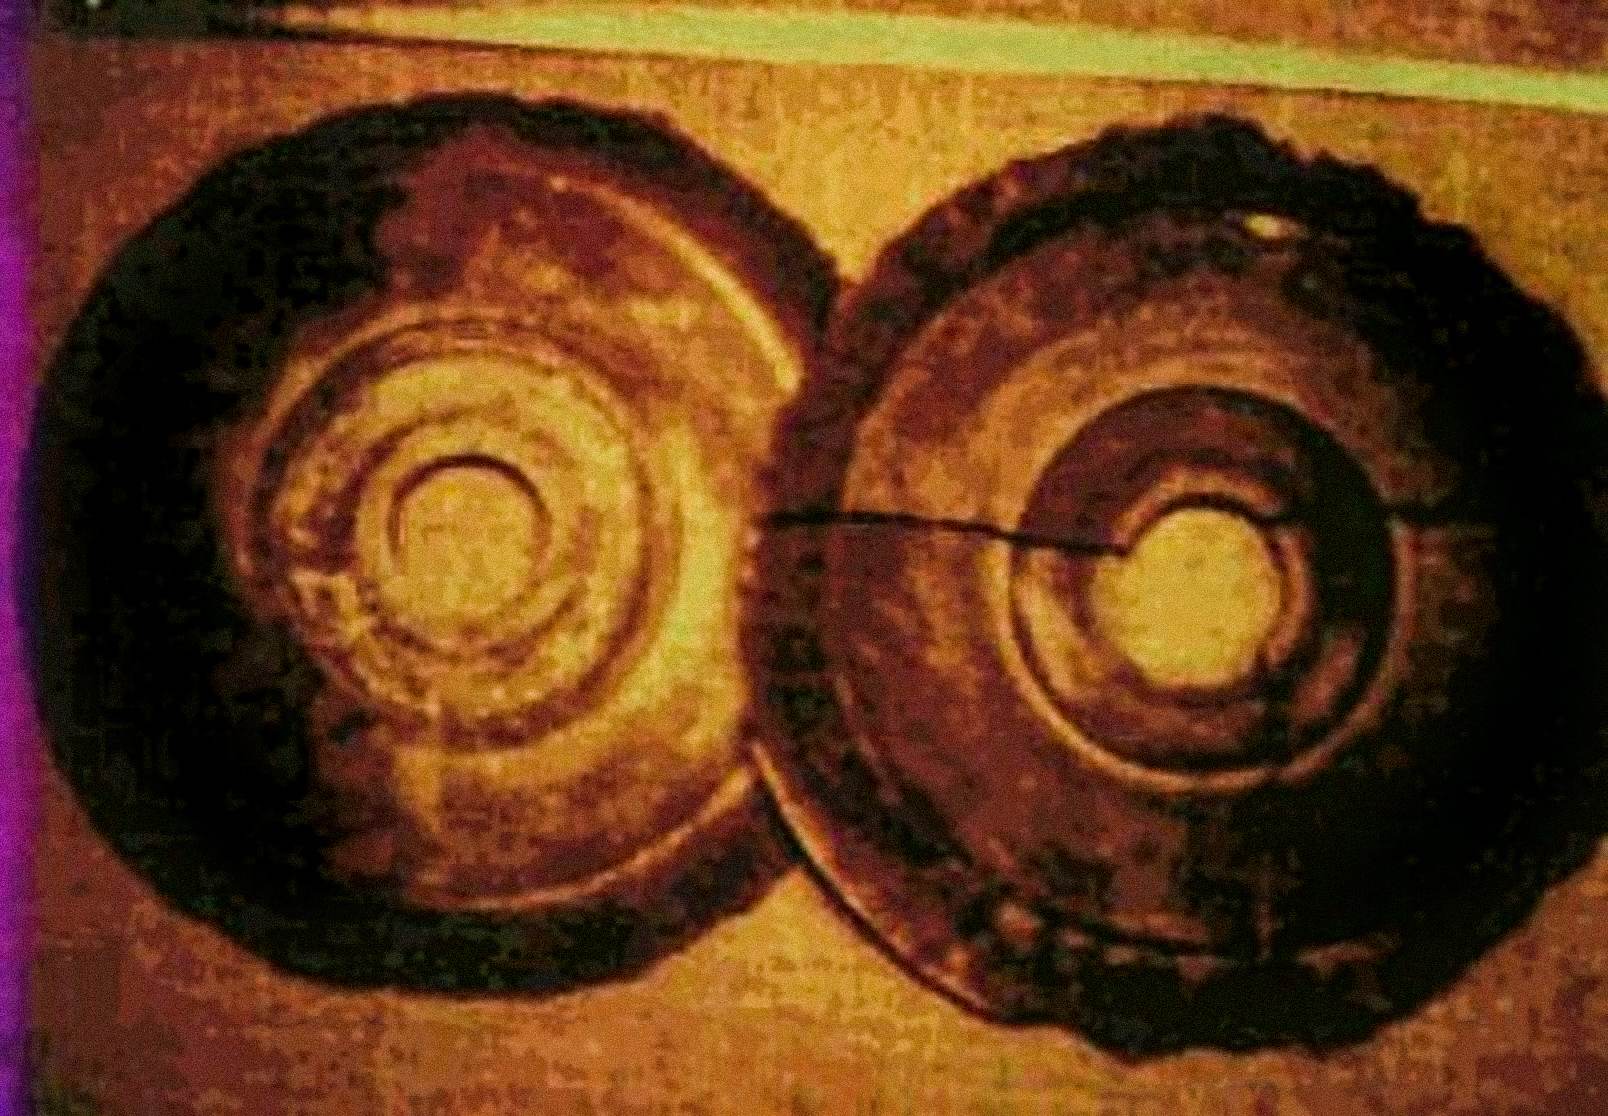 1974 में, ऑस्ट्रियाई इंजीनियर अर्न्स्ट वेगरर ने दो डिस्क की तस्वीरें खींचीं जो ड्रोपा स्टोन्स के विवरण से मिलती थीं। वह जियान में बानपो-संग्रहालय के एक निर्देशित दौरे पर थे, जब उन्होंने प्रदर्शन पर पत्थर की डिस्क देखी। उनका दावा है कि उन्होंने प्रत्येक डिस्क के केंद्र में एक छेद देखा और आंशिक रूप से टूटे हुए सर्पिल जैसे खांचे में चित्रलिपि देखी।